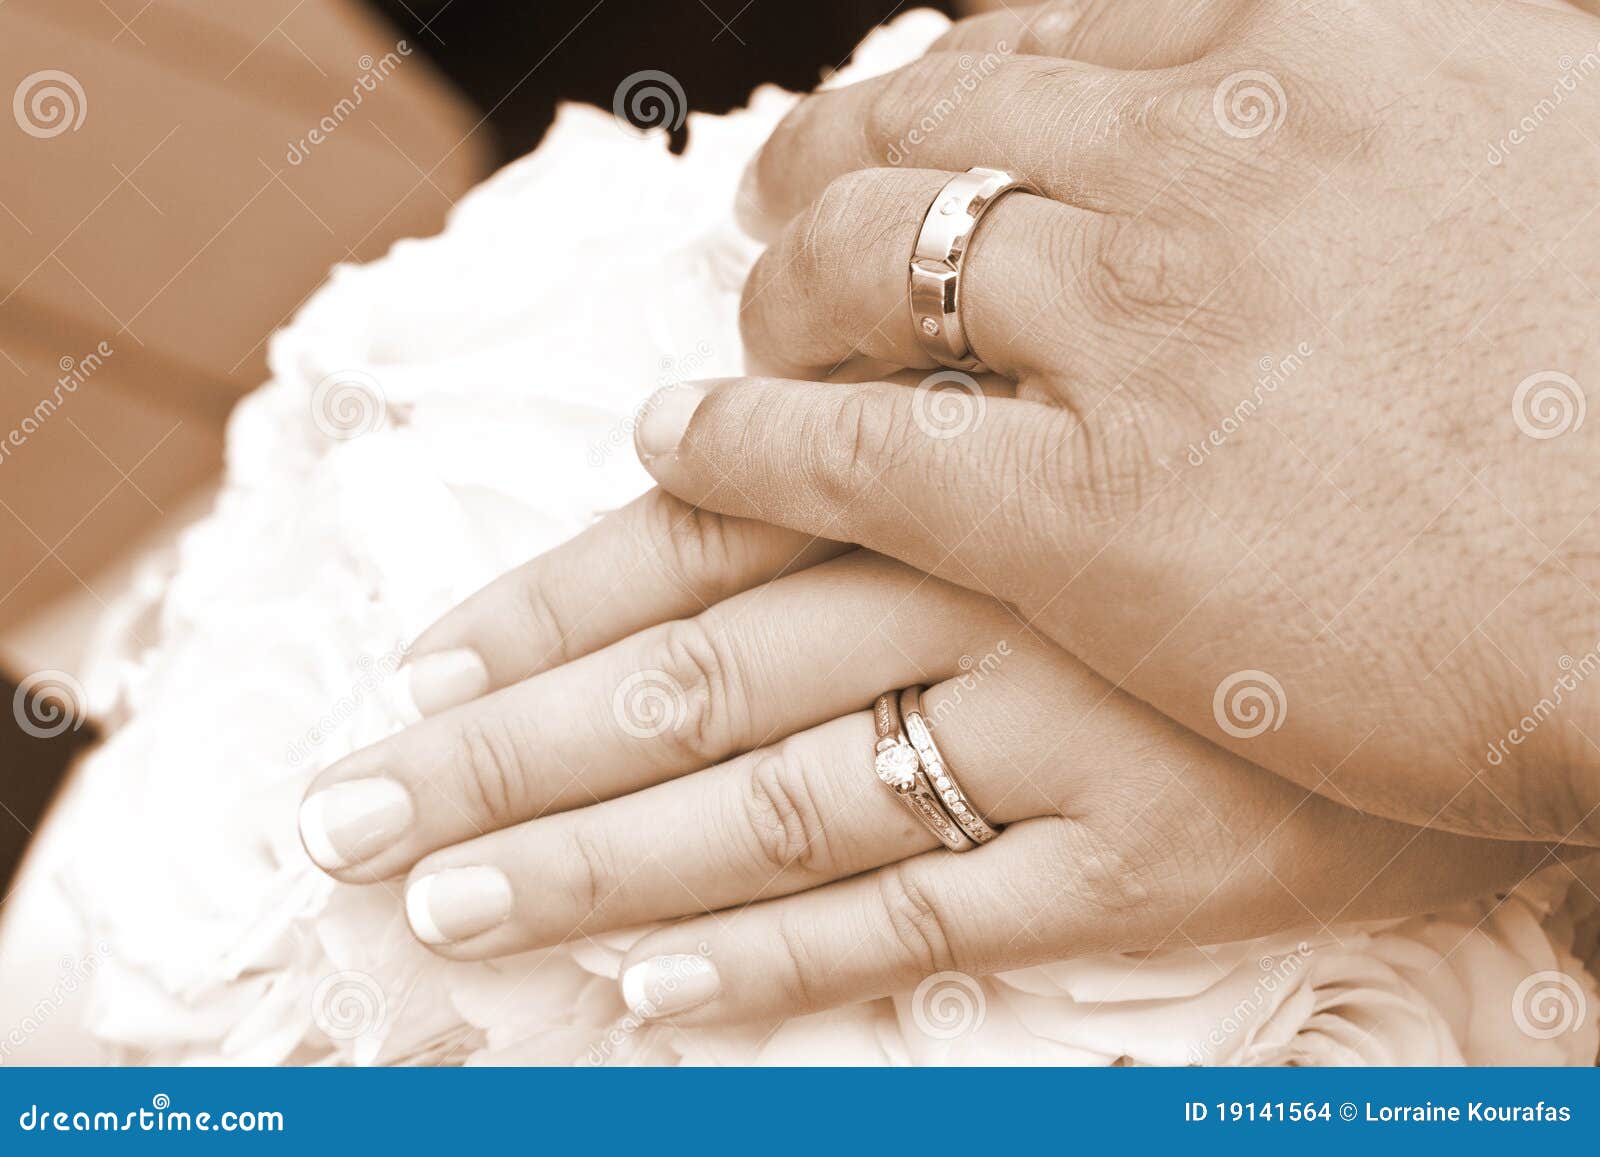 Обручальное и помолвочное кольцо вместе